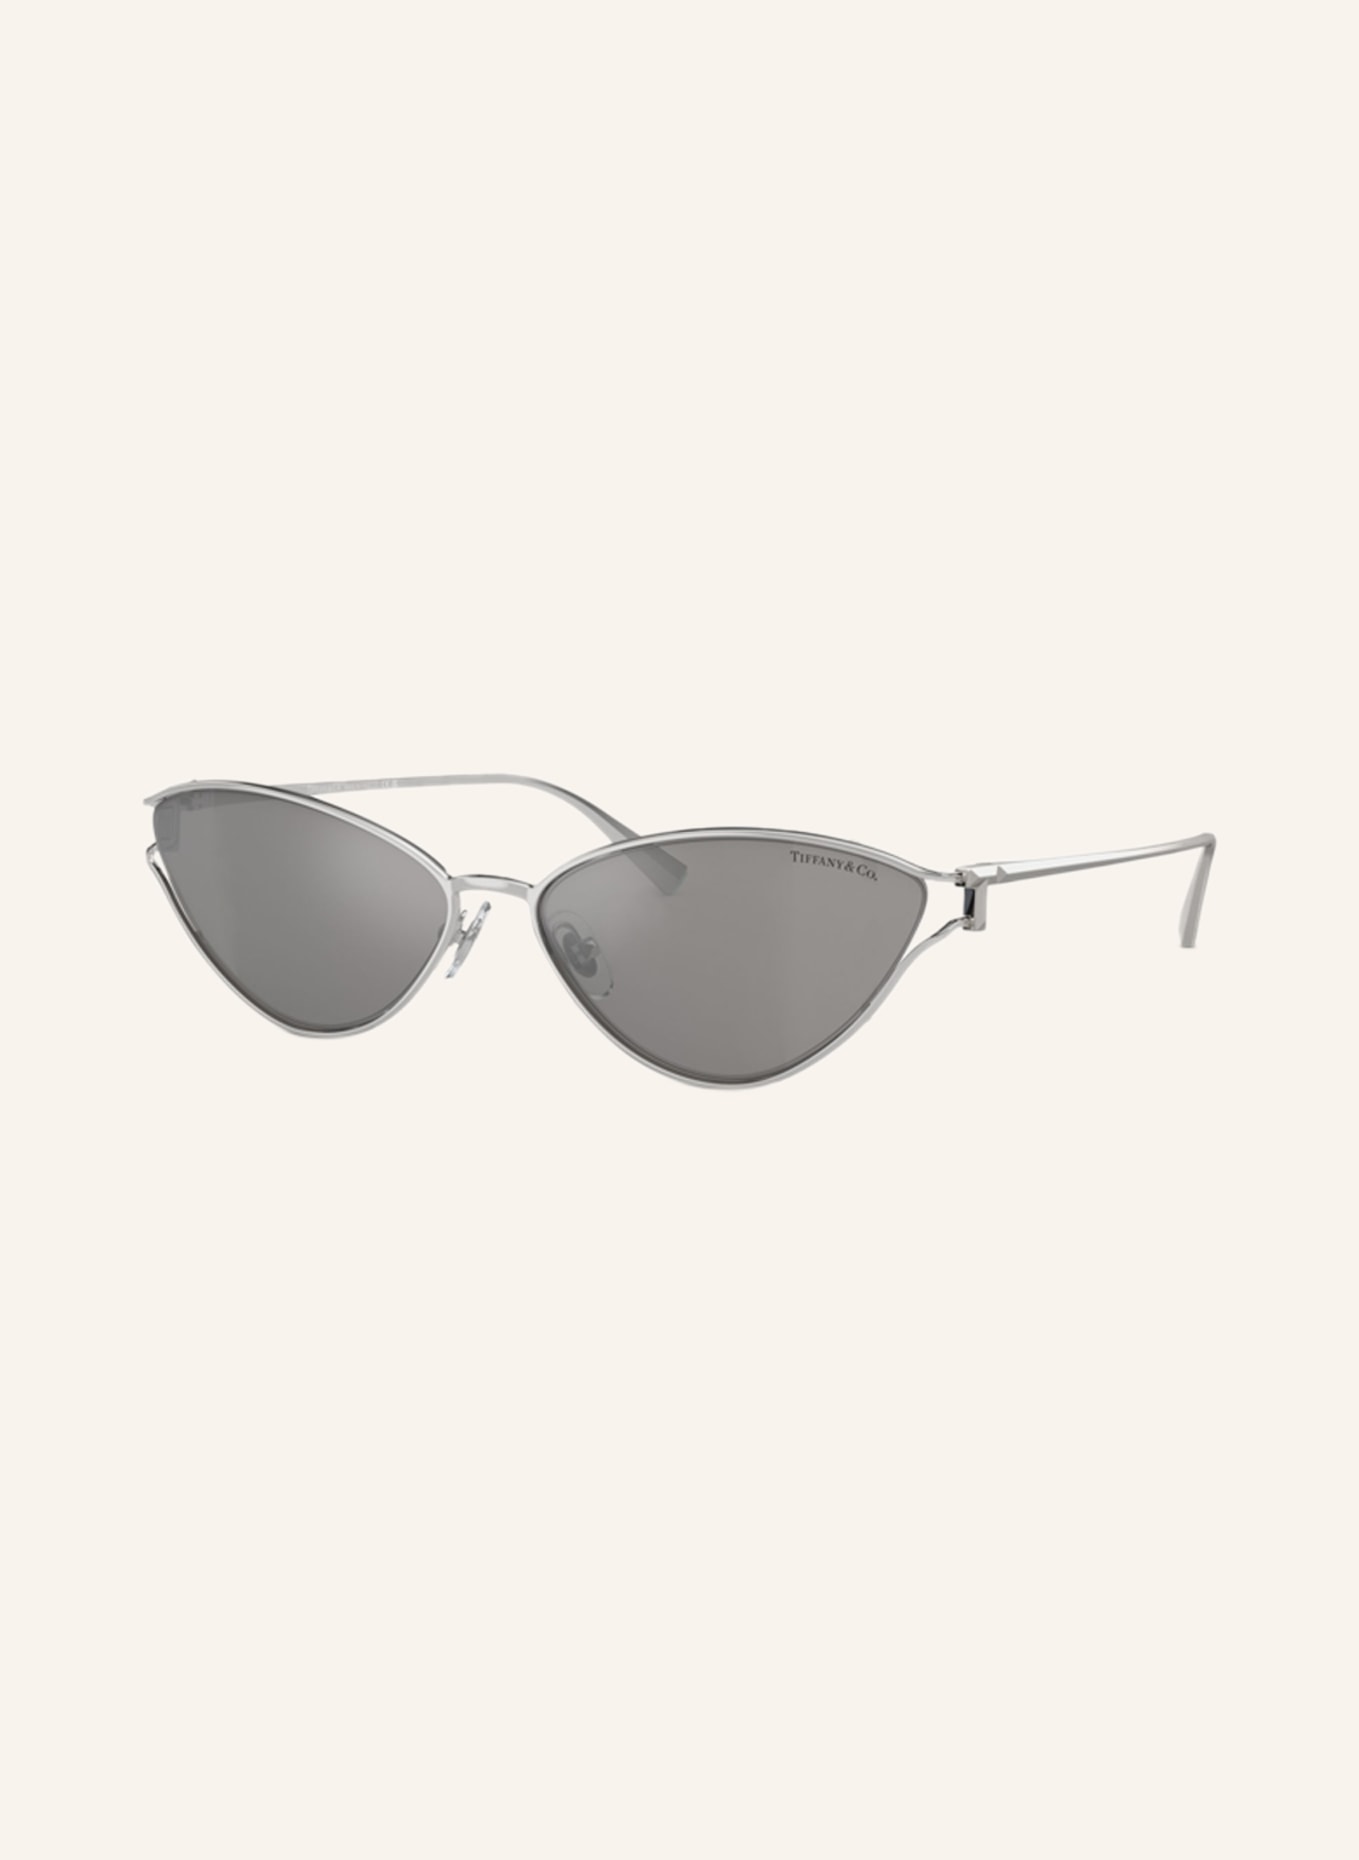 TIFFANY & Co. Sunglasses TF3095, Color: 61956G - SILVER/GRAY (Image 1)